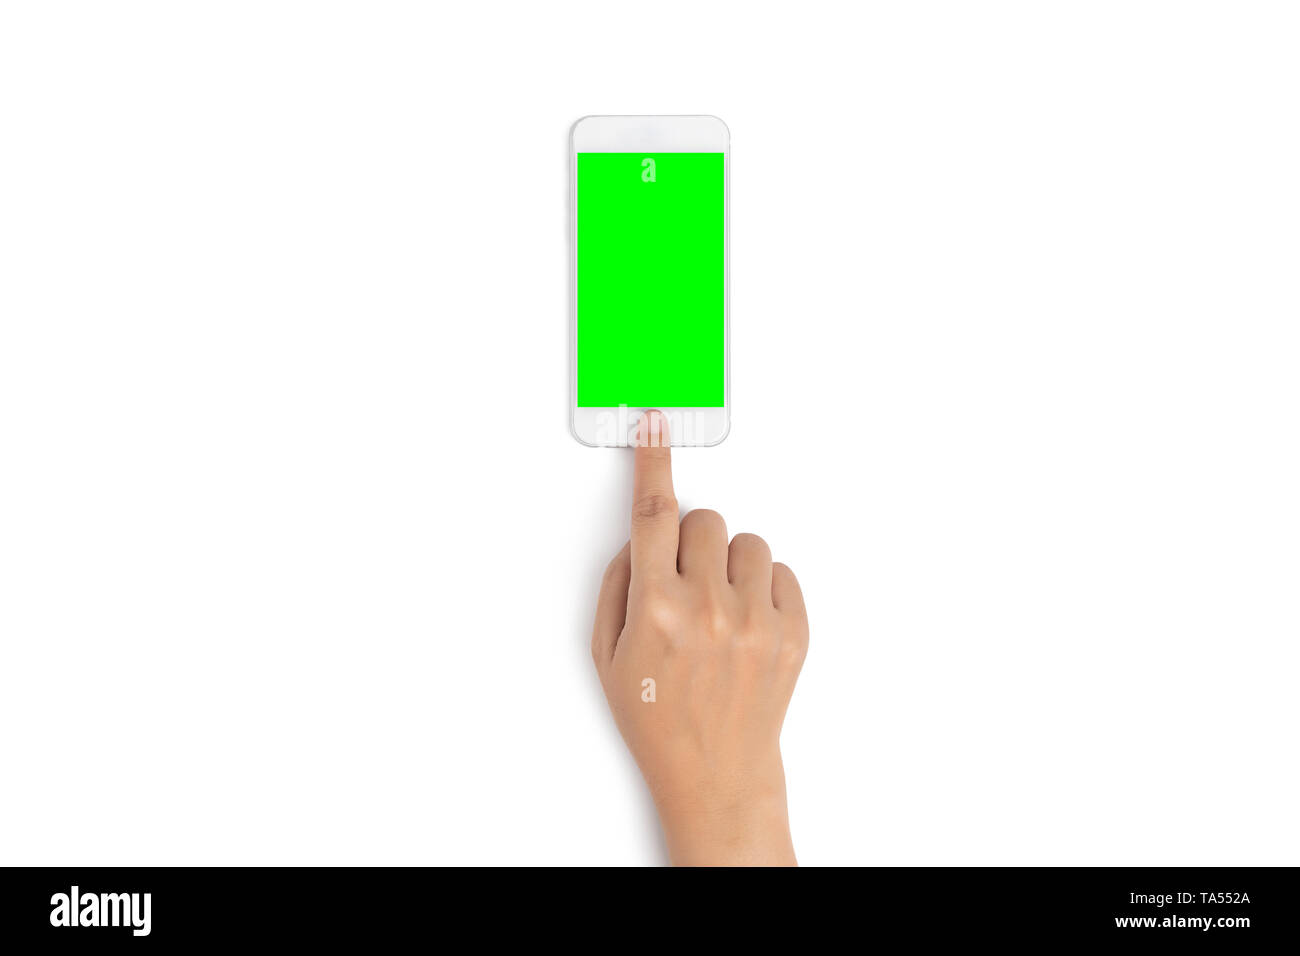 Femme part utiliser le doigt sur le bouton de téléphone mobile tactile avec écran vert blanc en vue de dessus, isolé sur fond blanc avec clipping path Banque D'Images